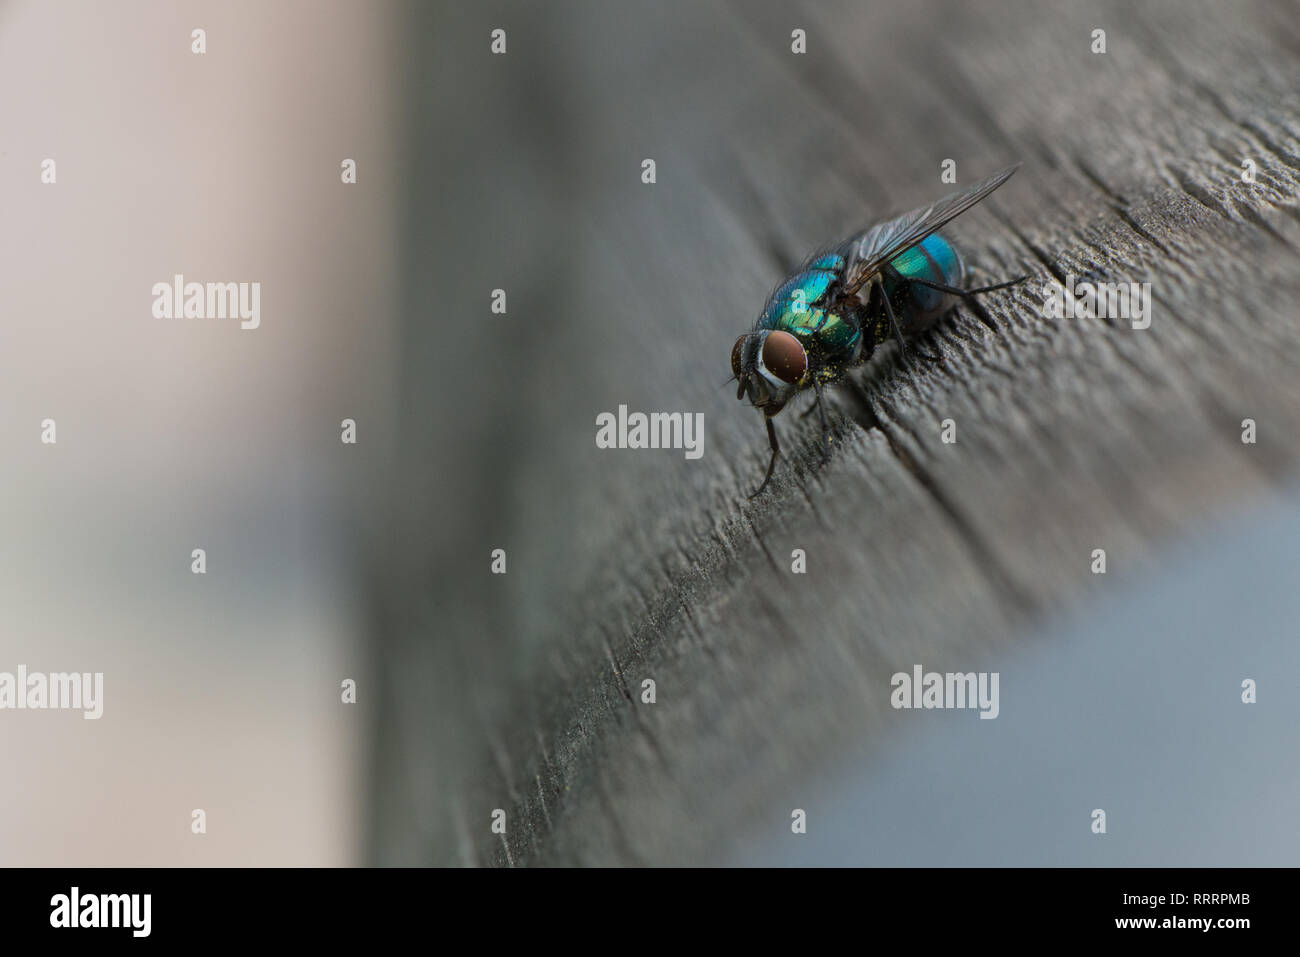 Eine greenbottle Lucilia sericata, Fliegen, ist ein Schlag fliegen mit  brillanten, metallic, blau-grüne Farbe. Close-up von winzigen Diptera,  Makro Fotografie von Fliegen Stockfotografie - Alamy